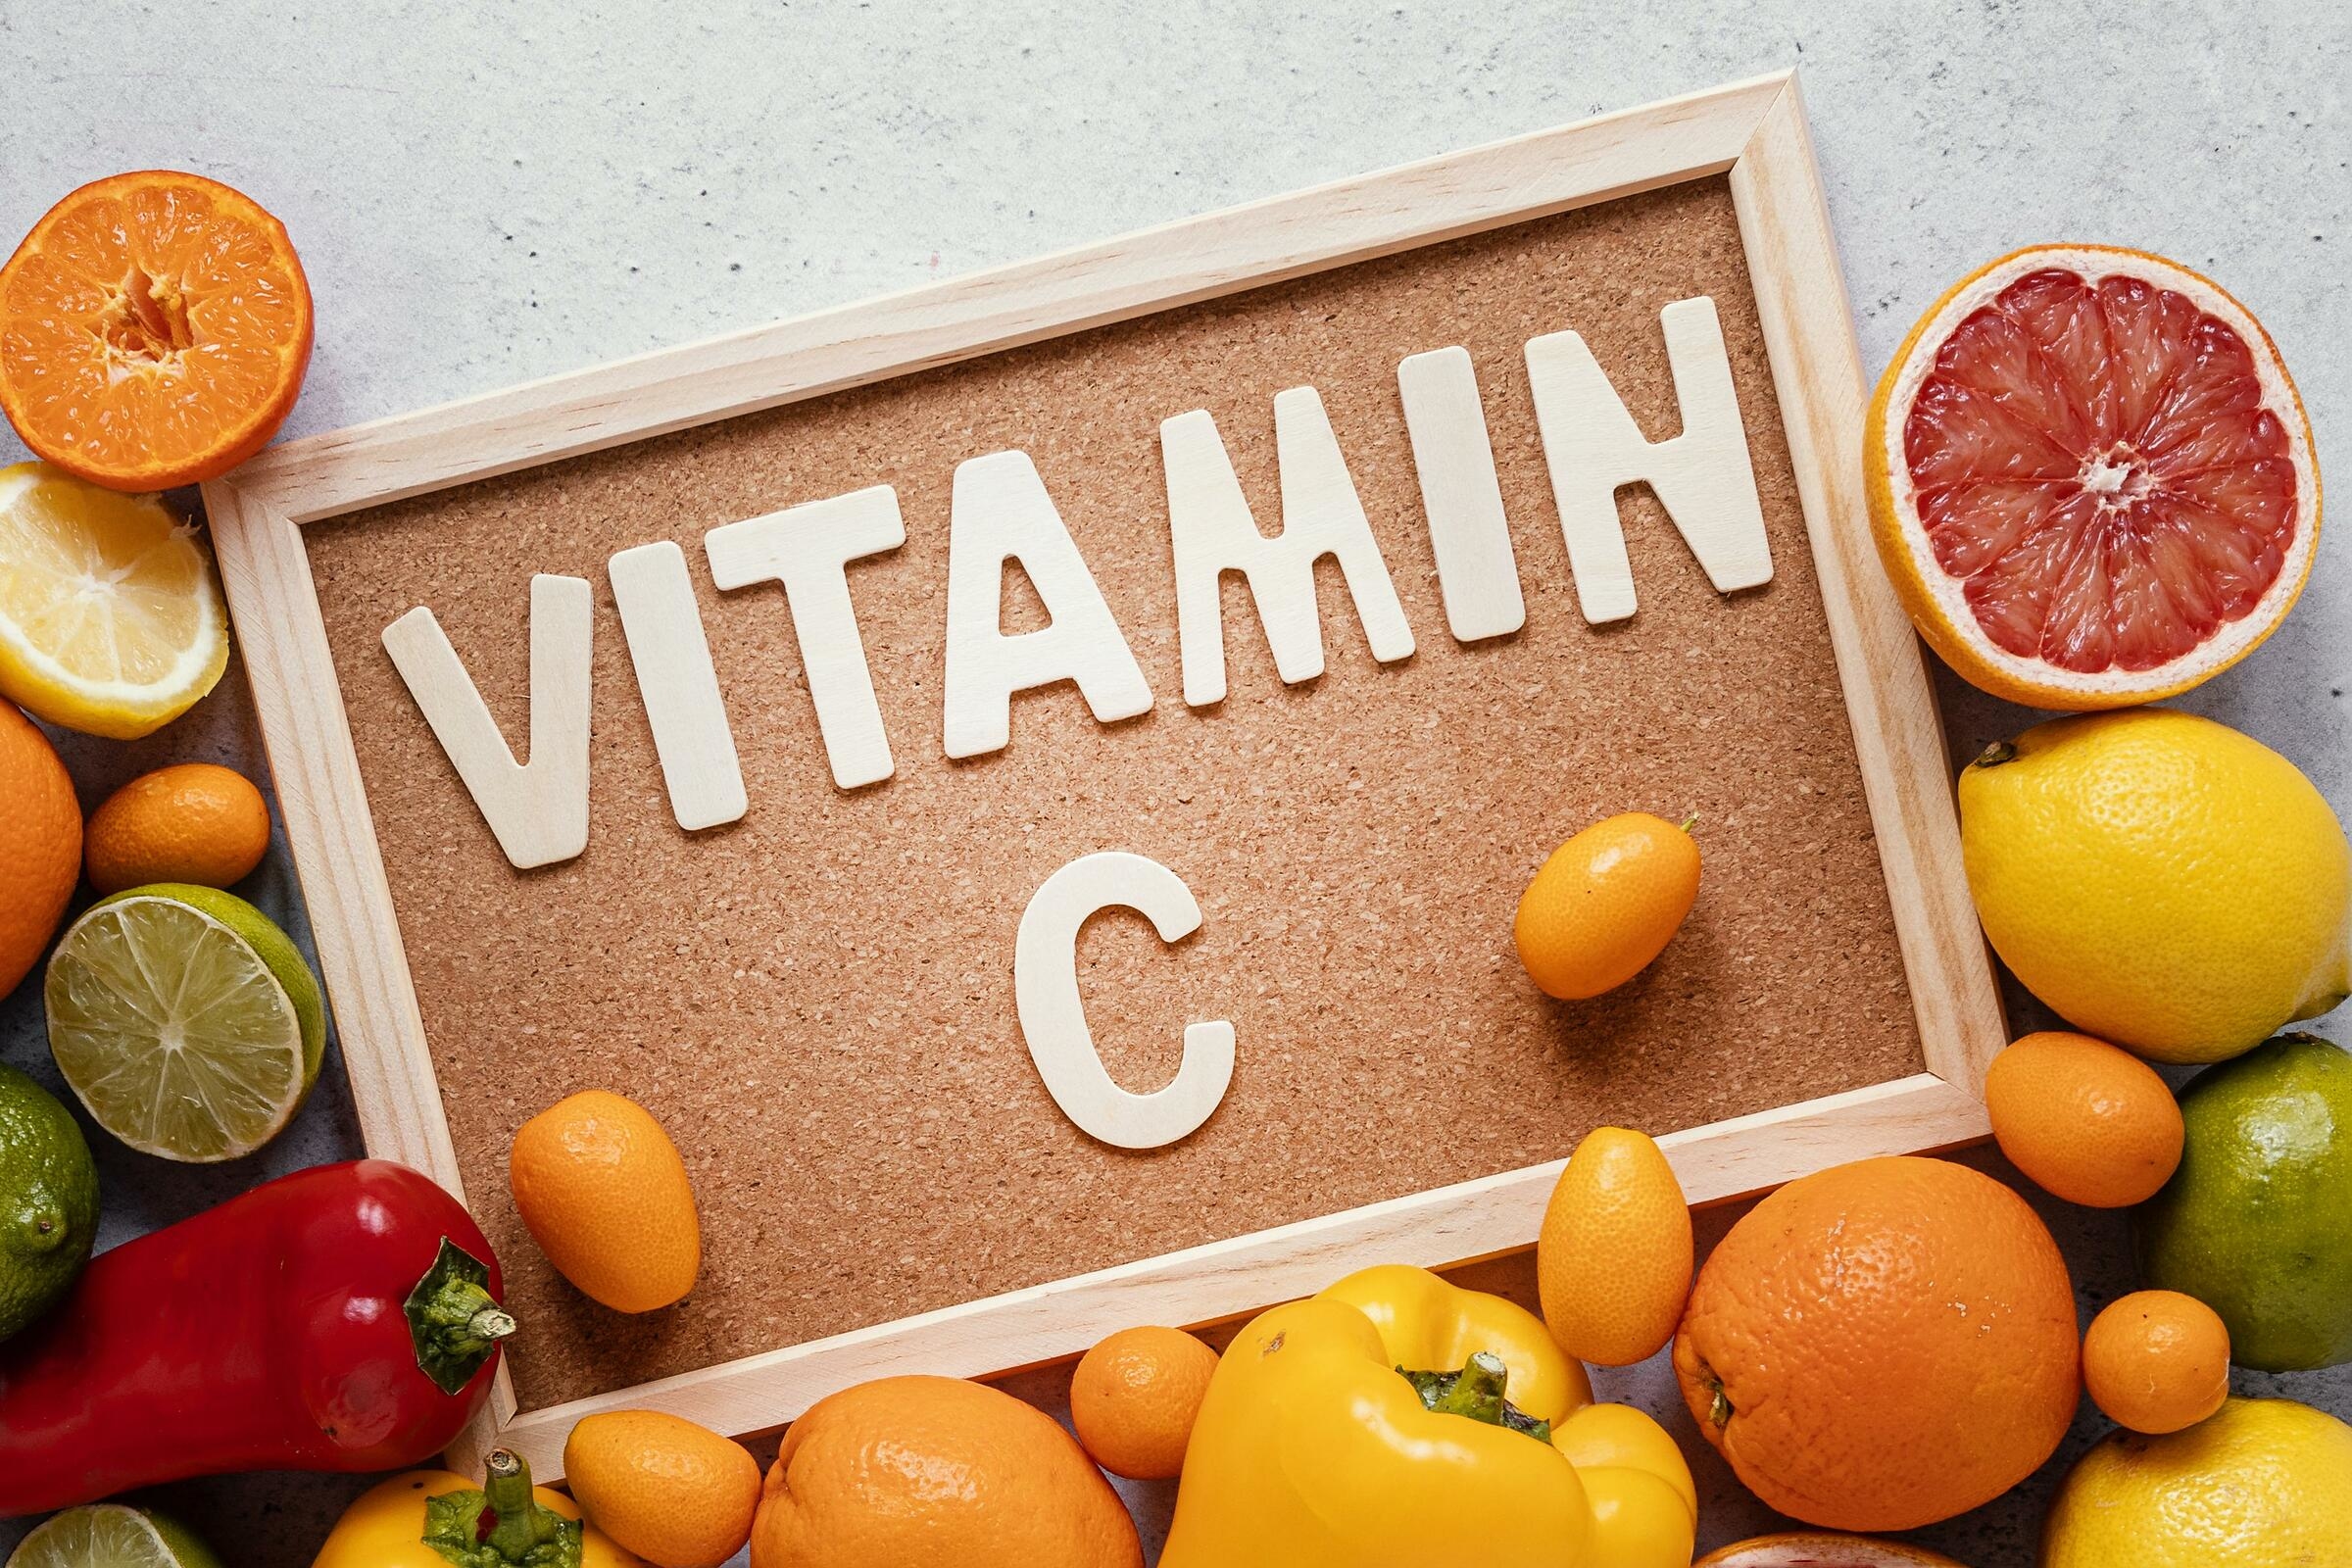 Vitamins and more. Витамины картинки. Что такое витамины. Витамины в продуктах картинки для детей. Витамины и минералы картинки.